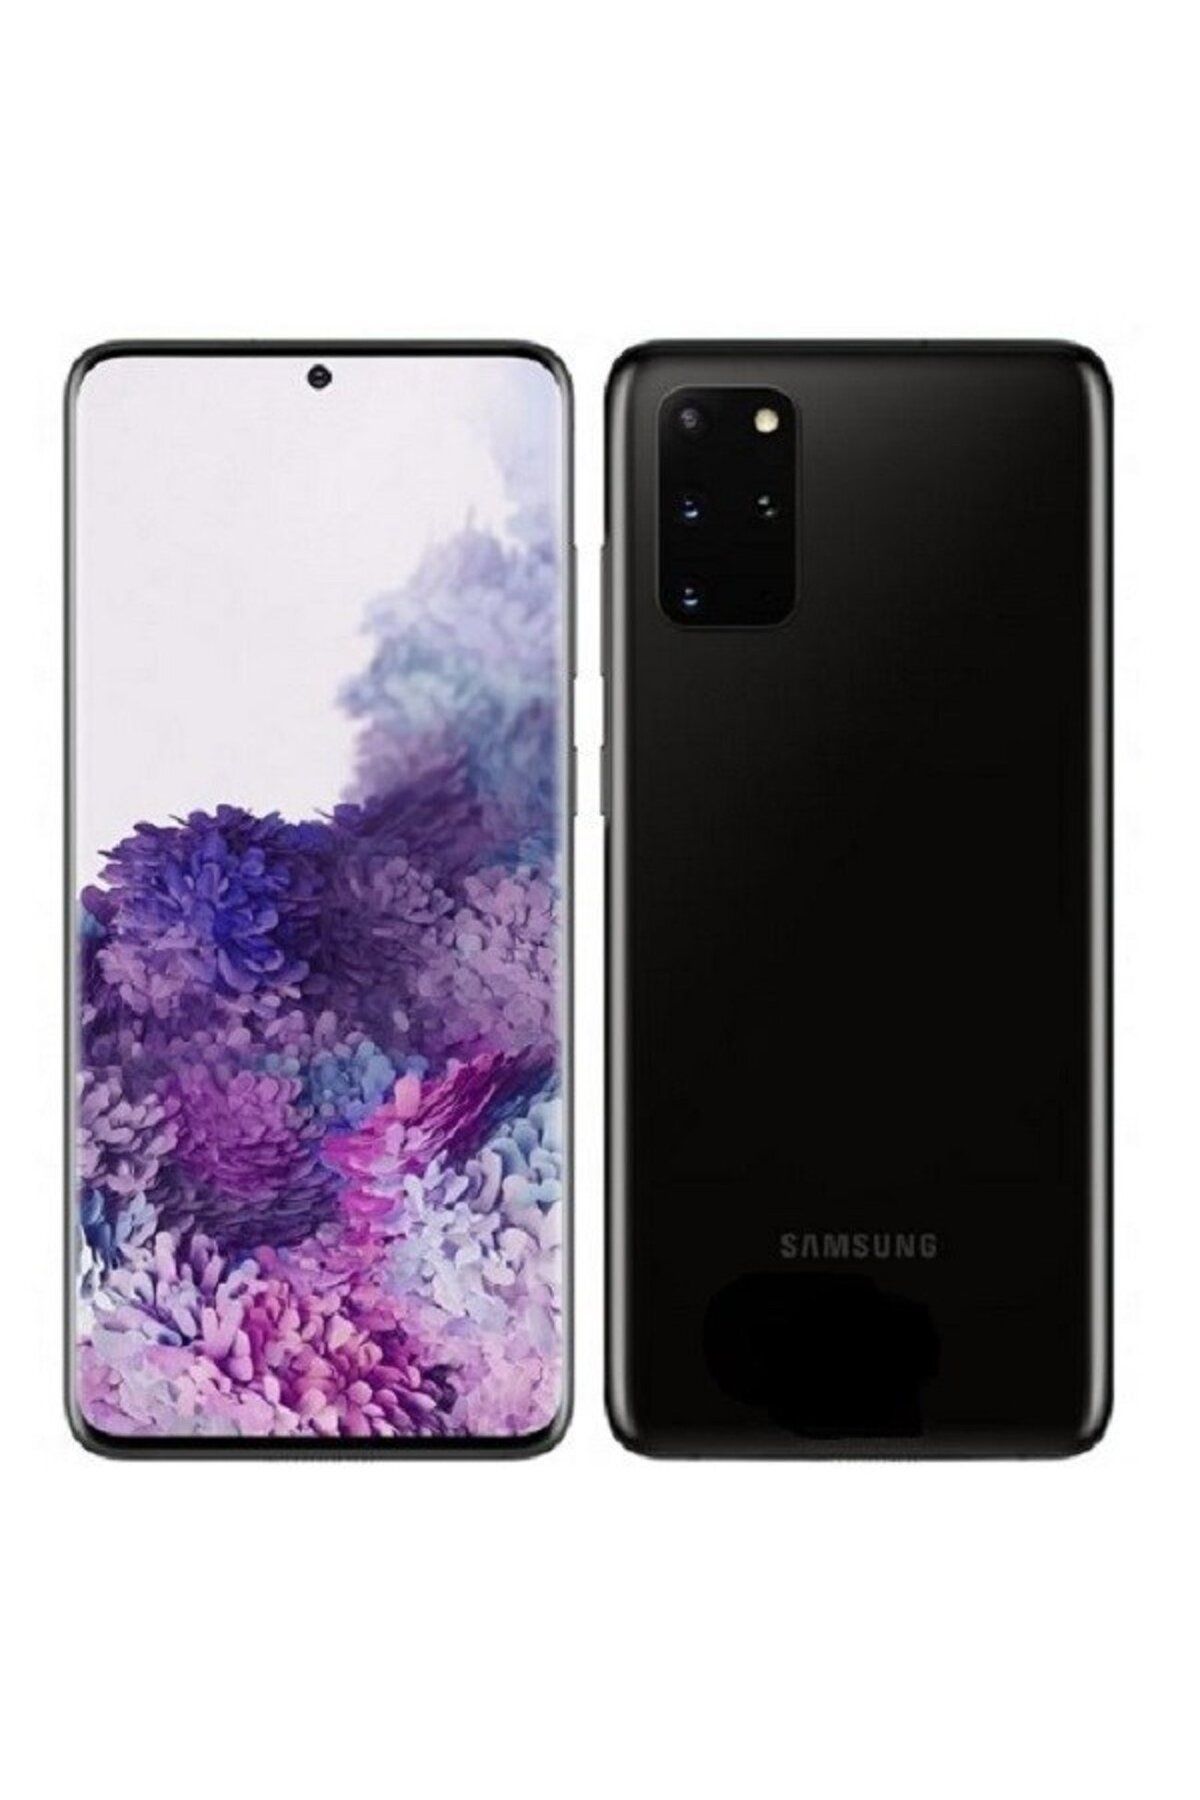 Samsung Yenilenmiş Samsung Galaxy S20 Plus 128GB Siyah B Kalite